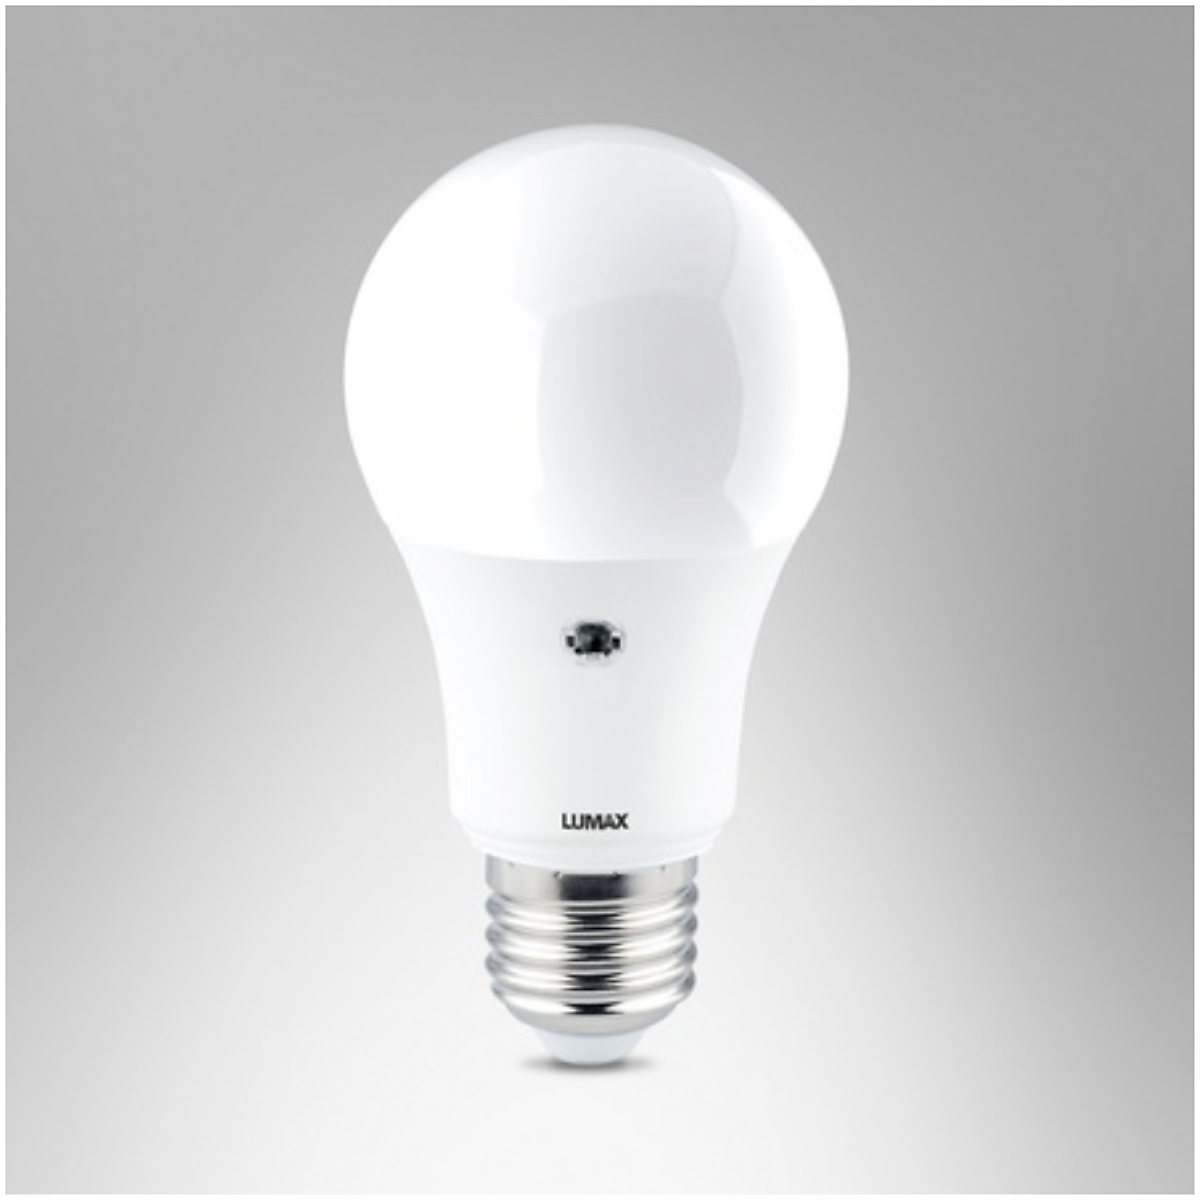 BÓNG ĐÈN LUMAX#ECOBULB-860LM/865/9W/E27/Light Sensor - Bóng đèn